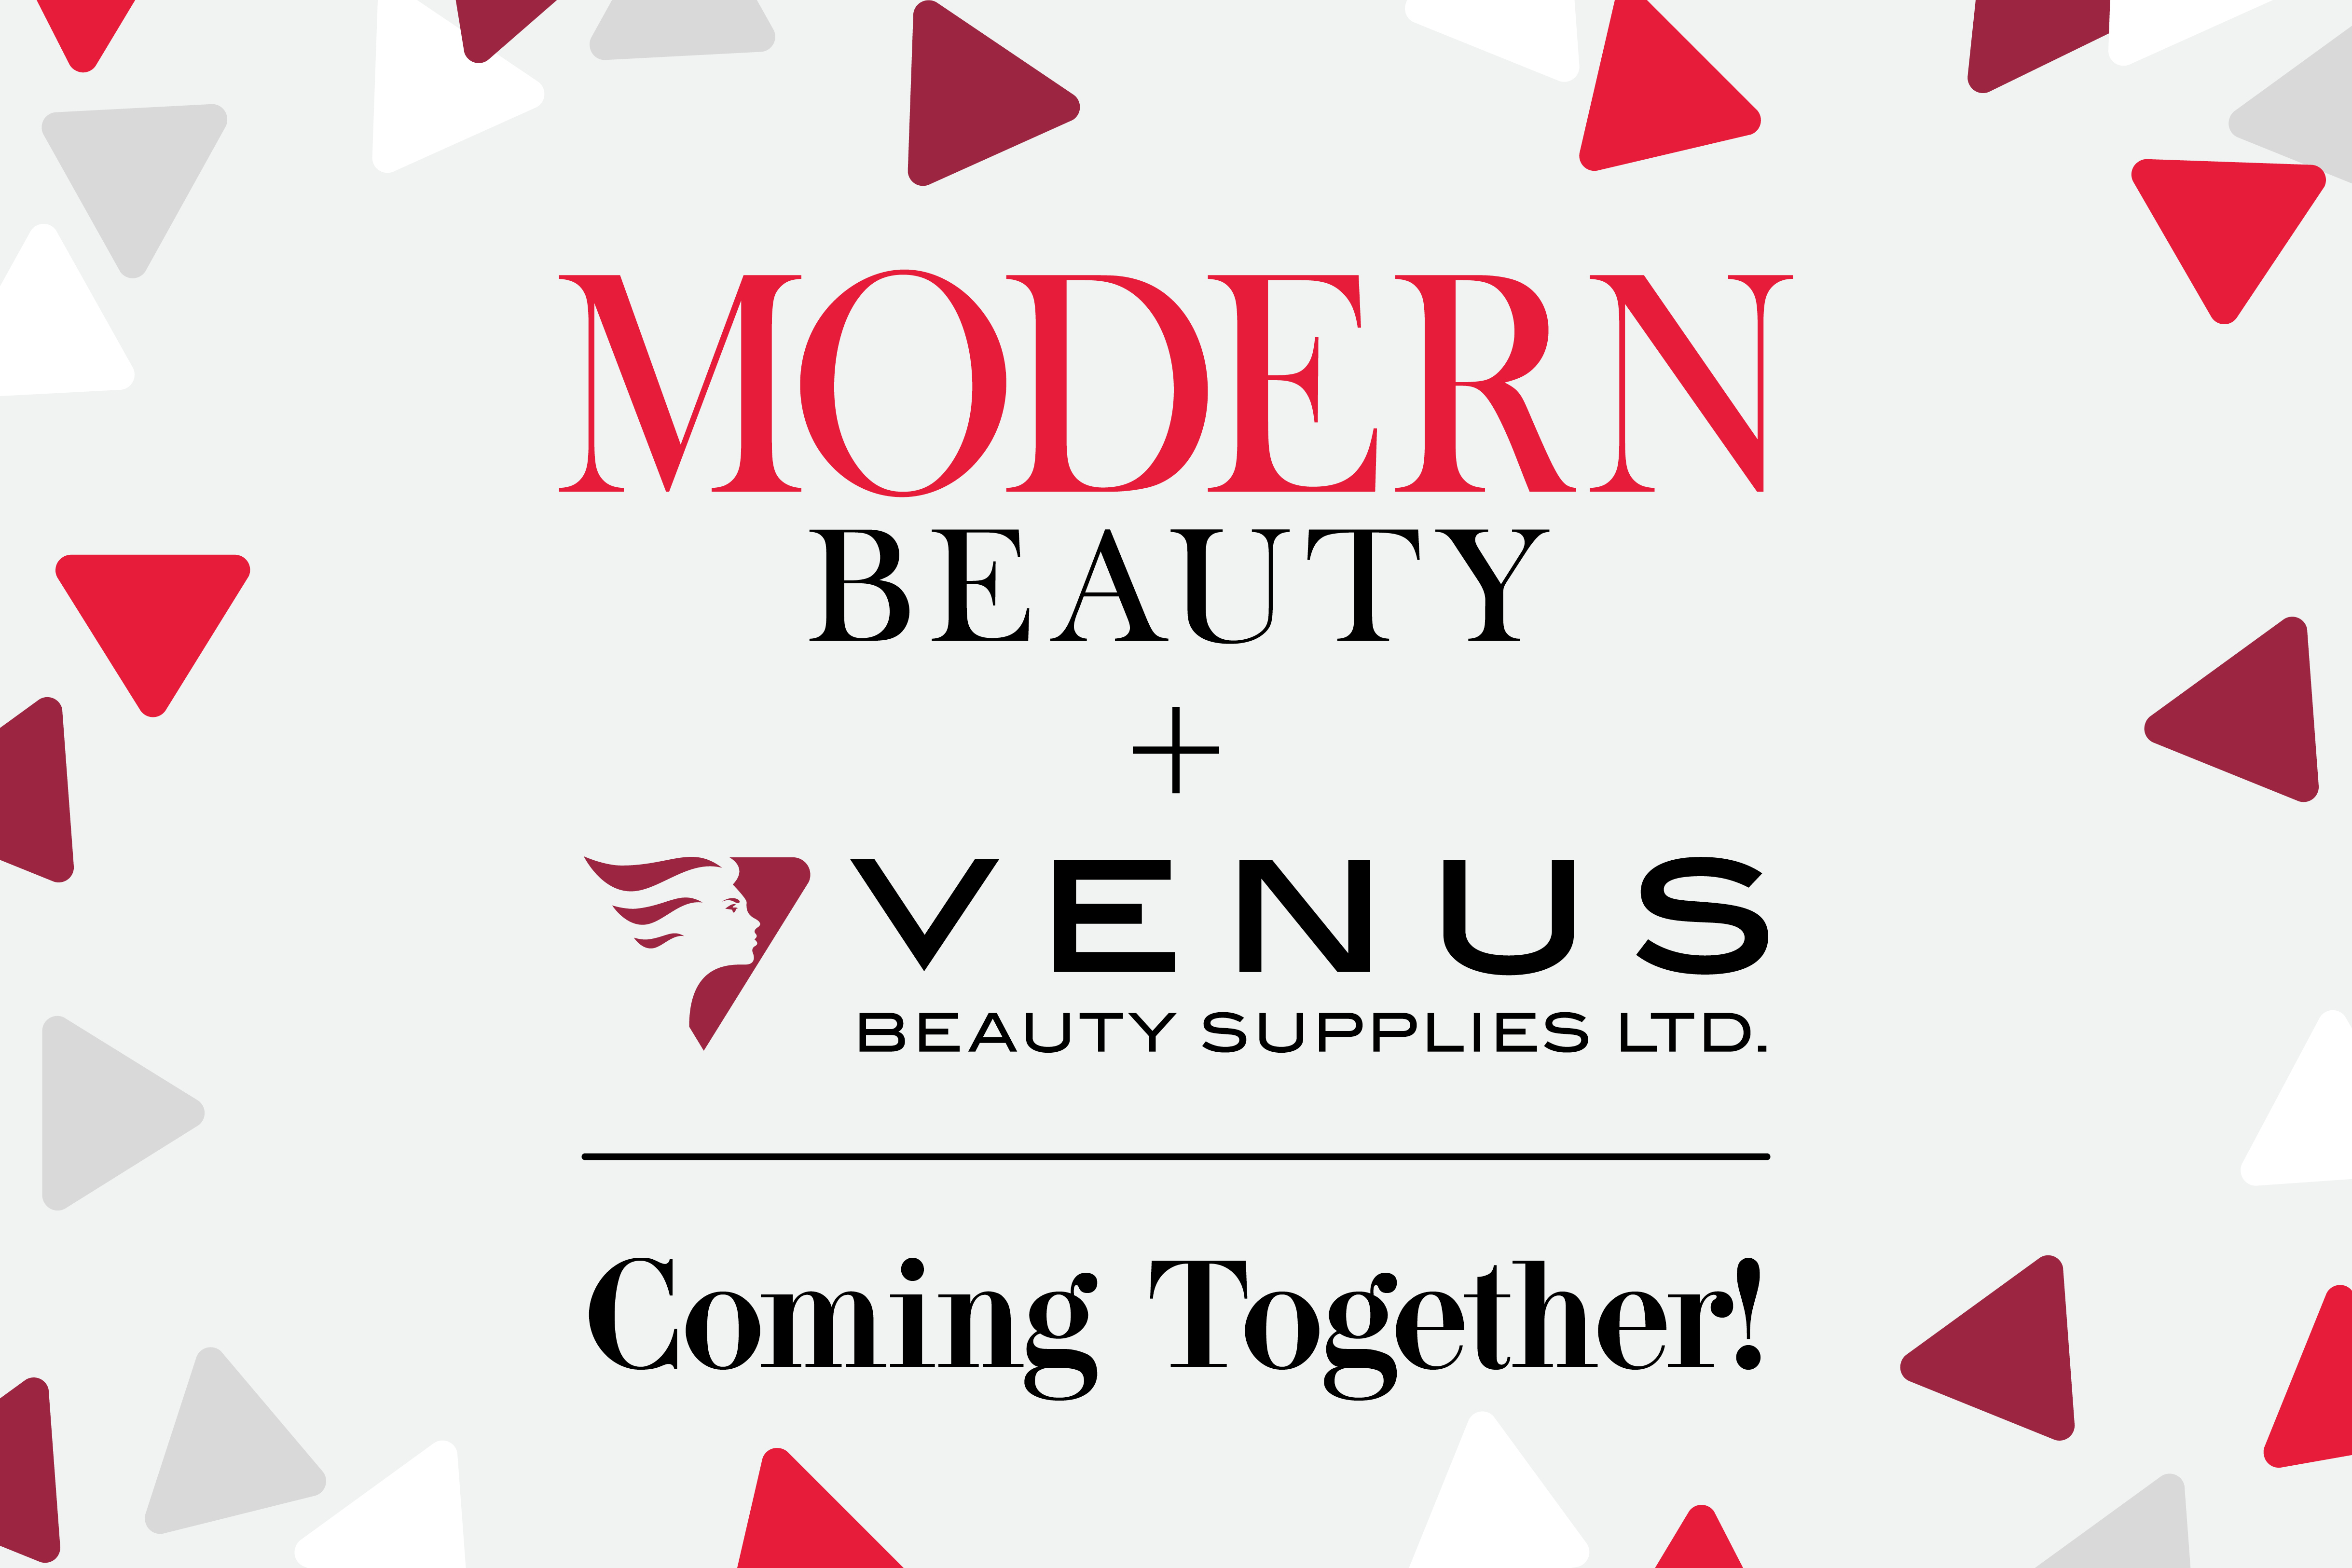 Venus Beauty Acquisition